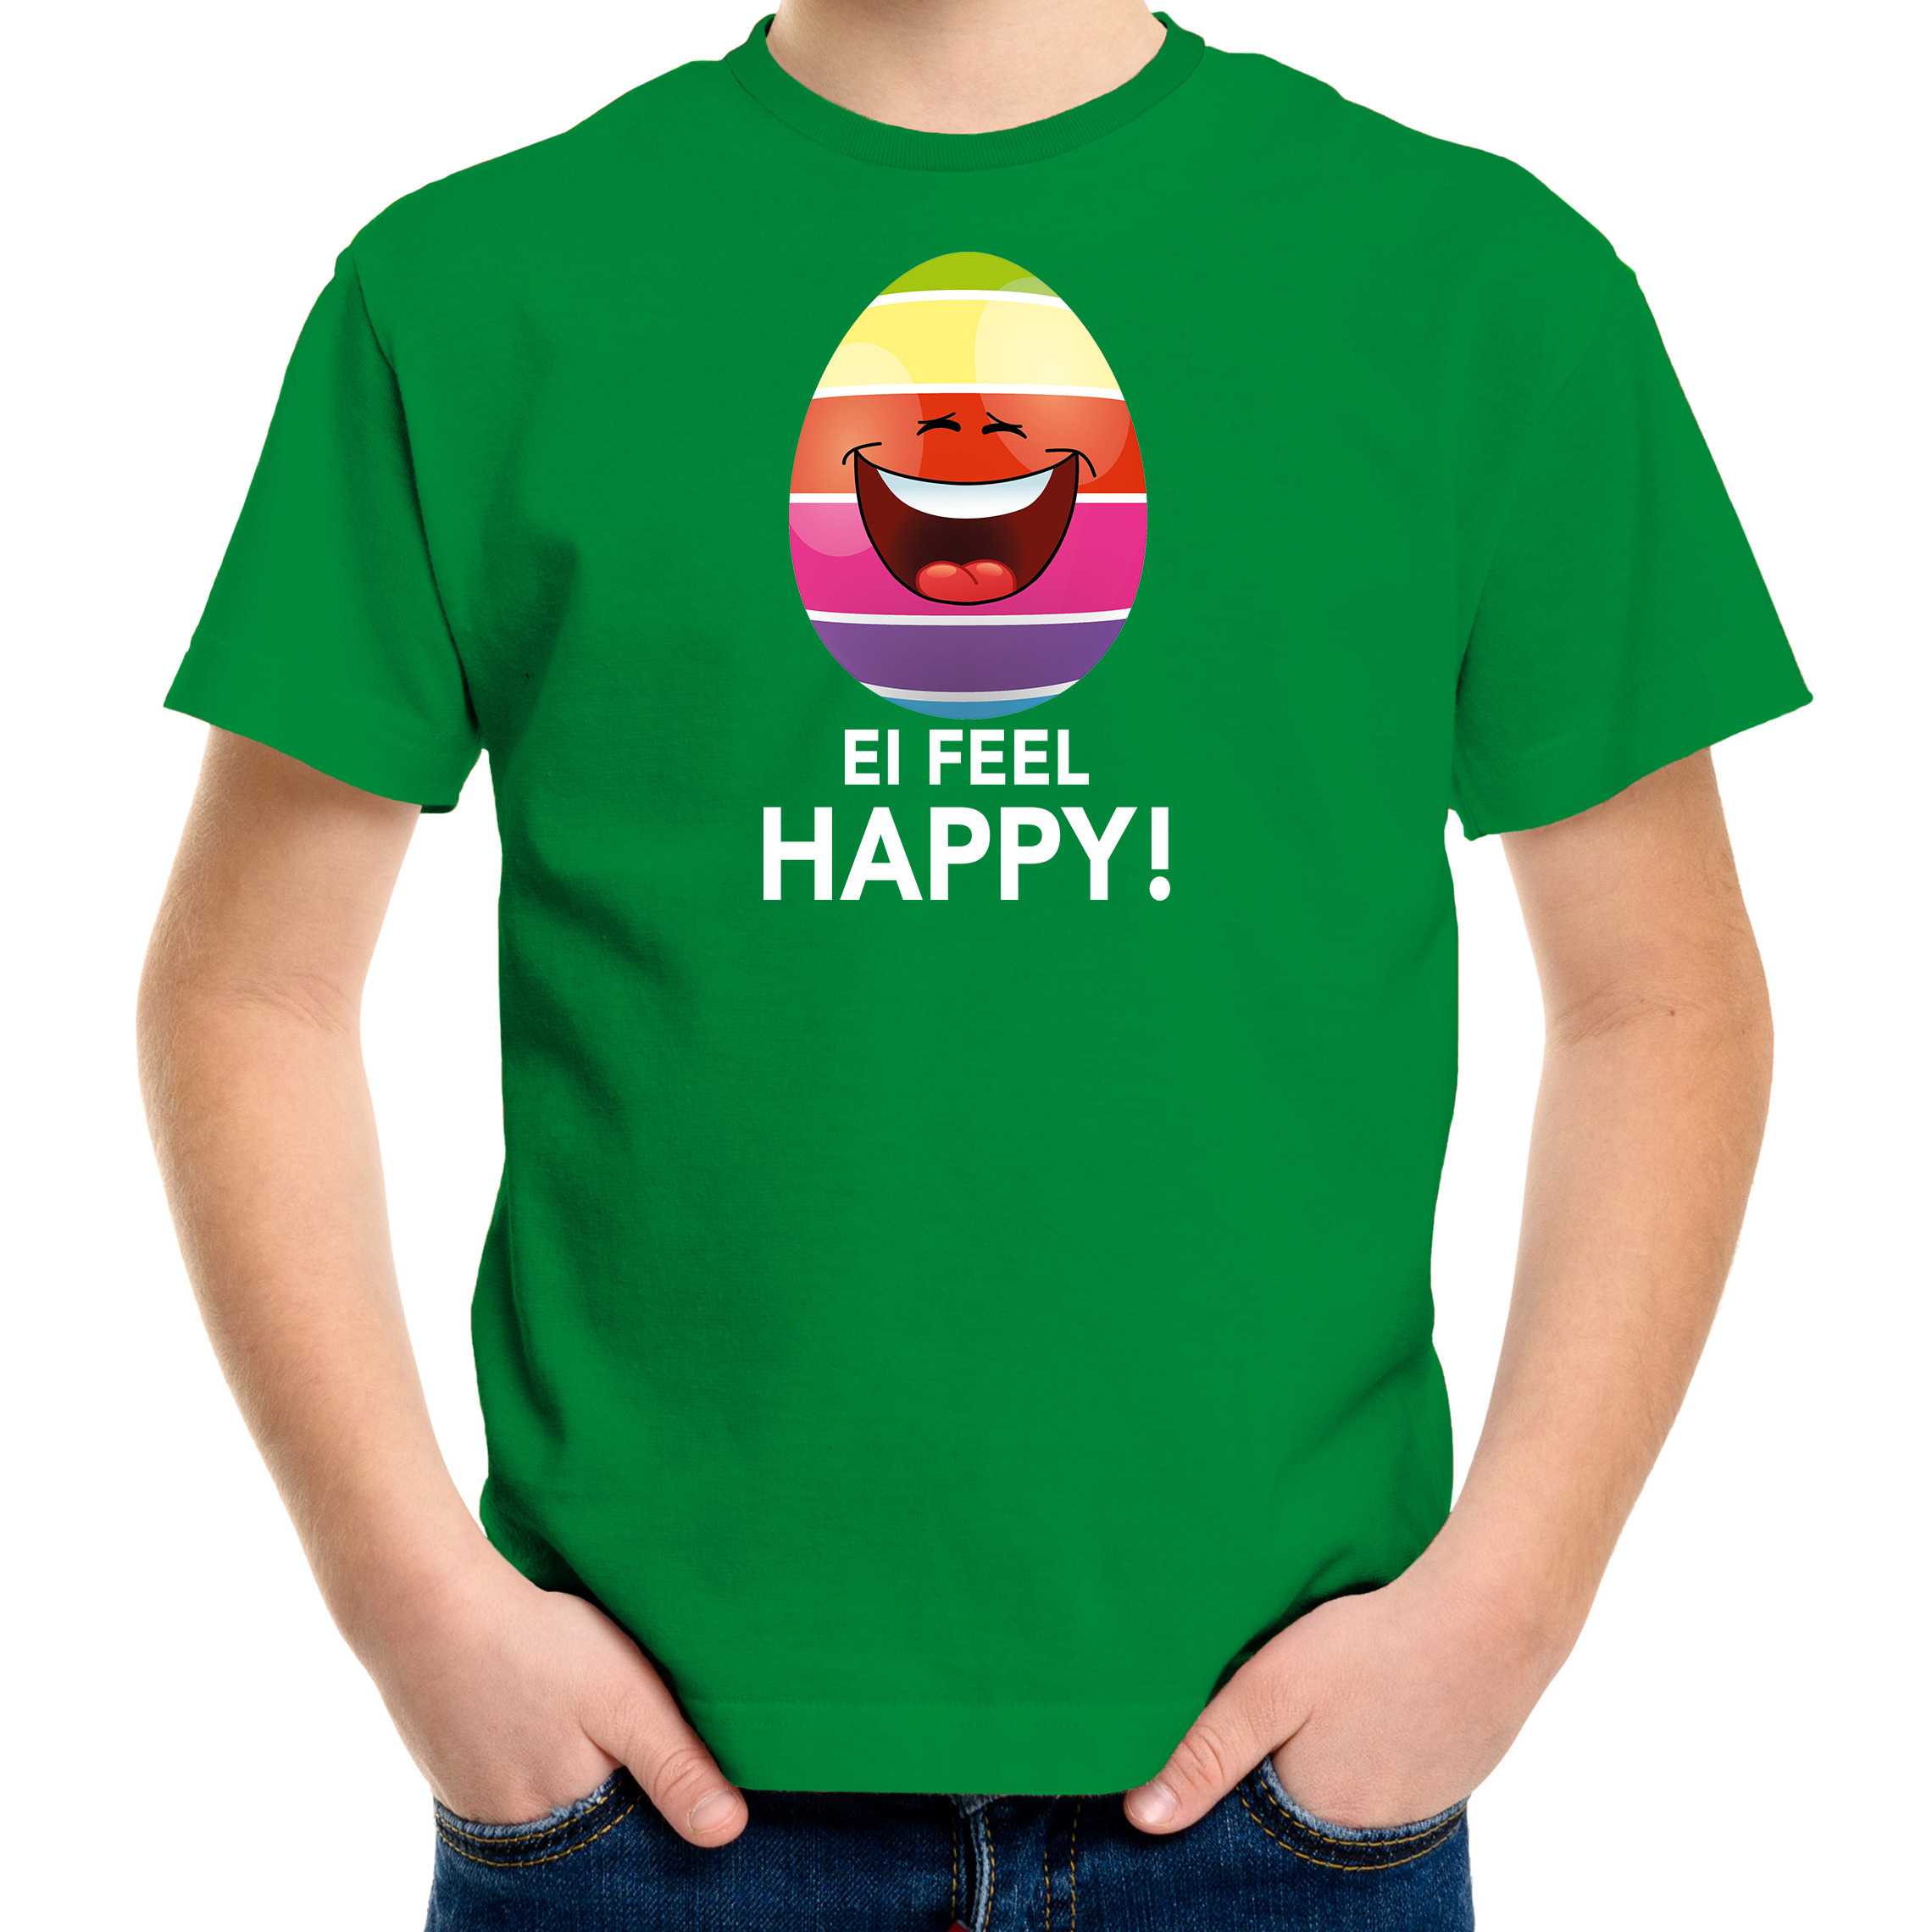 Vrolijk Paasei ei feel happy t-shirt groen voor kinderen Paas kleding-outfit